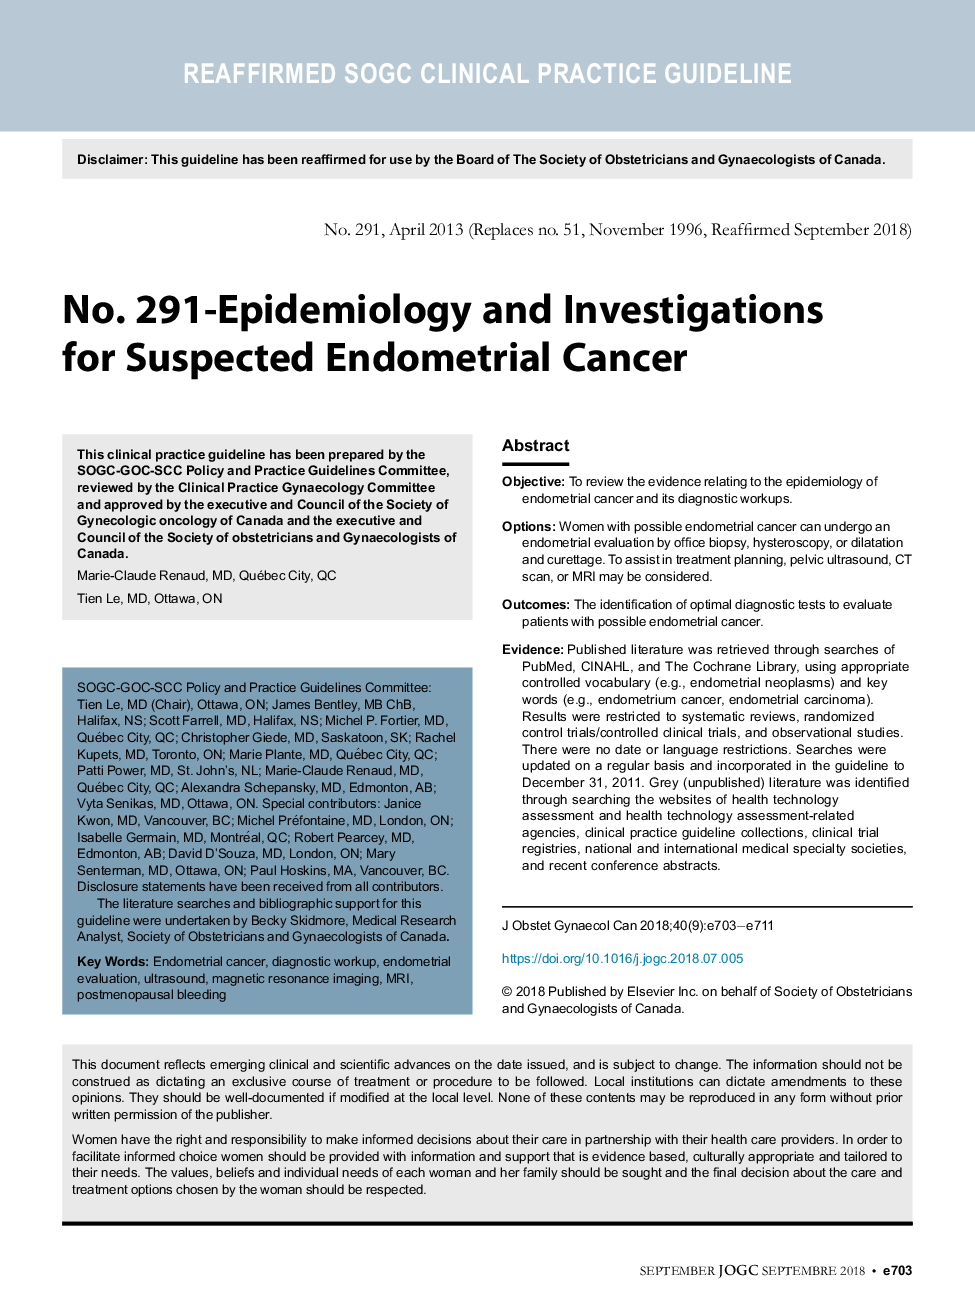 شماره 291 - اپیدمیولوژی و تحقیقات برای سرطان آندومتر مورد انتظار